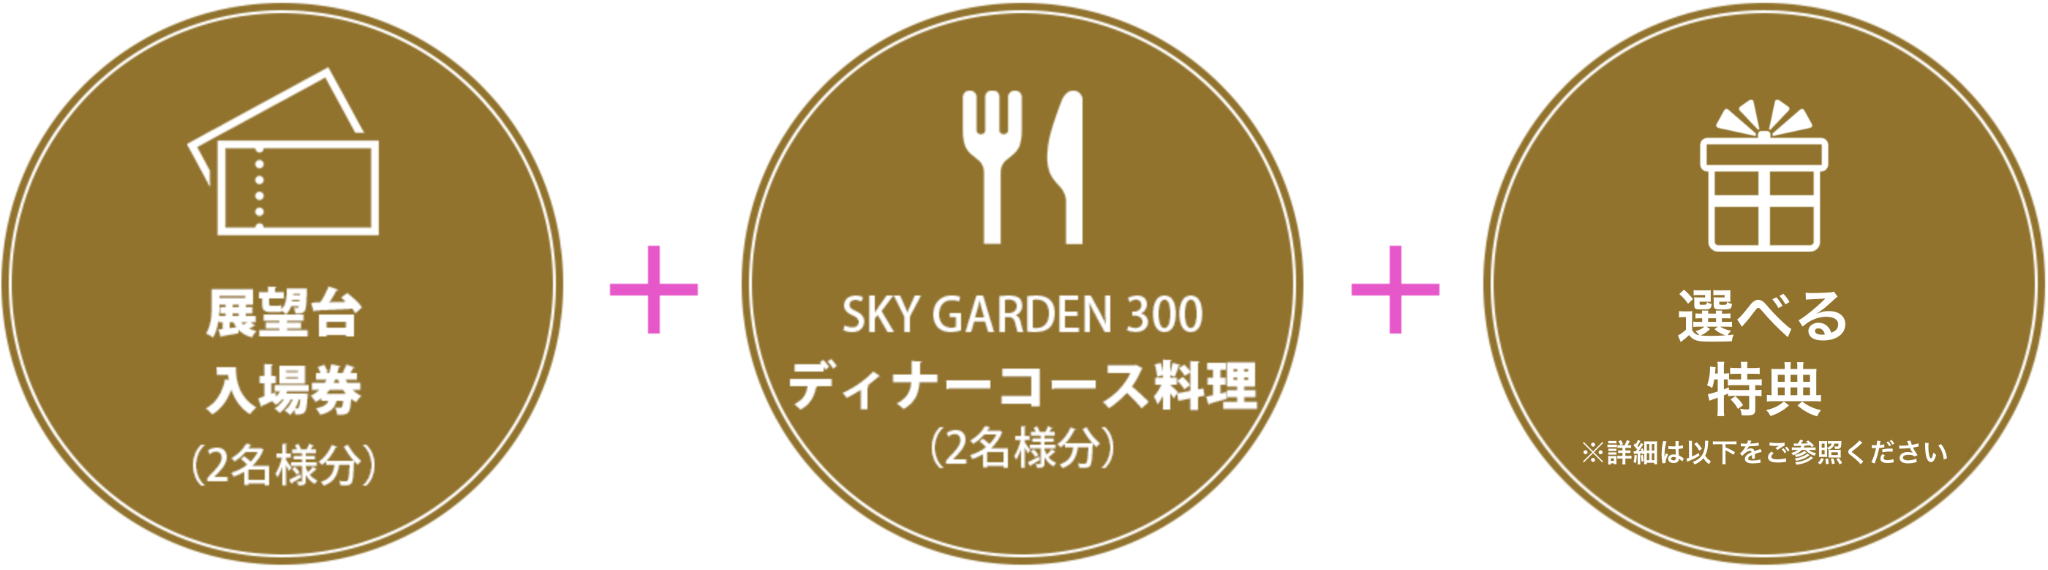 展望台入場券（2名様分）SKY GARDEN 300ディナーコース料理（2名様分）
								（1枚）